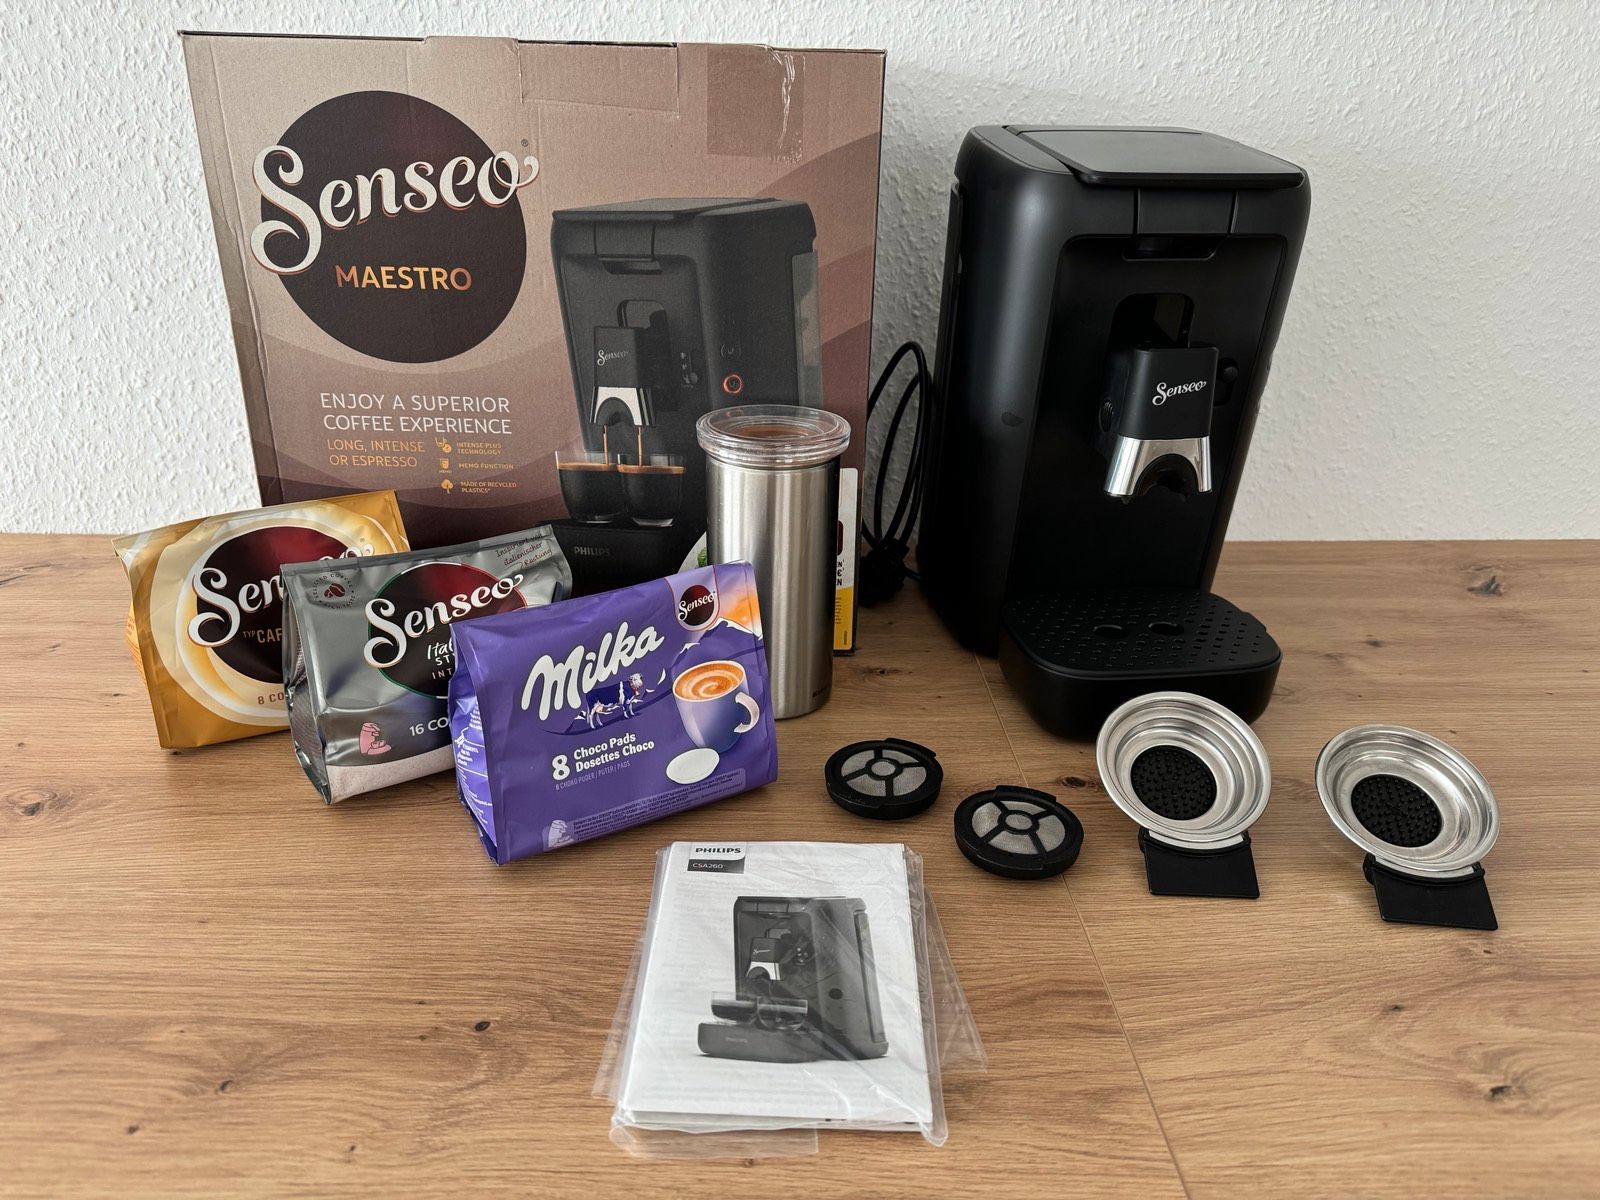 Philips Senseo Kaffeepadmaschine Maestro CSA260/65